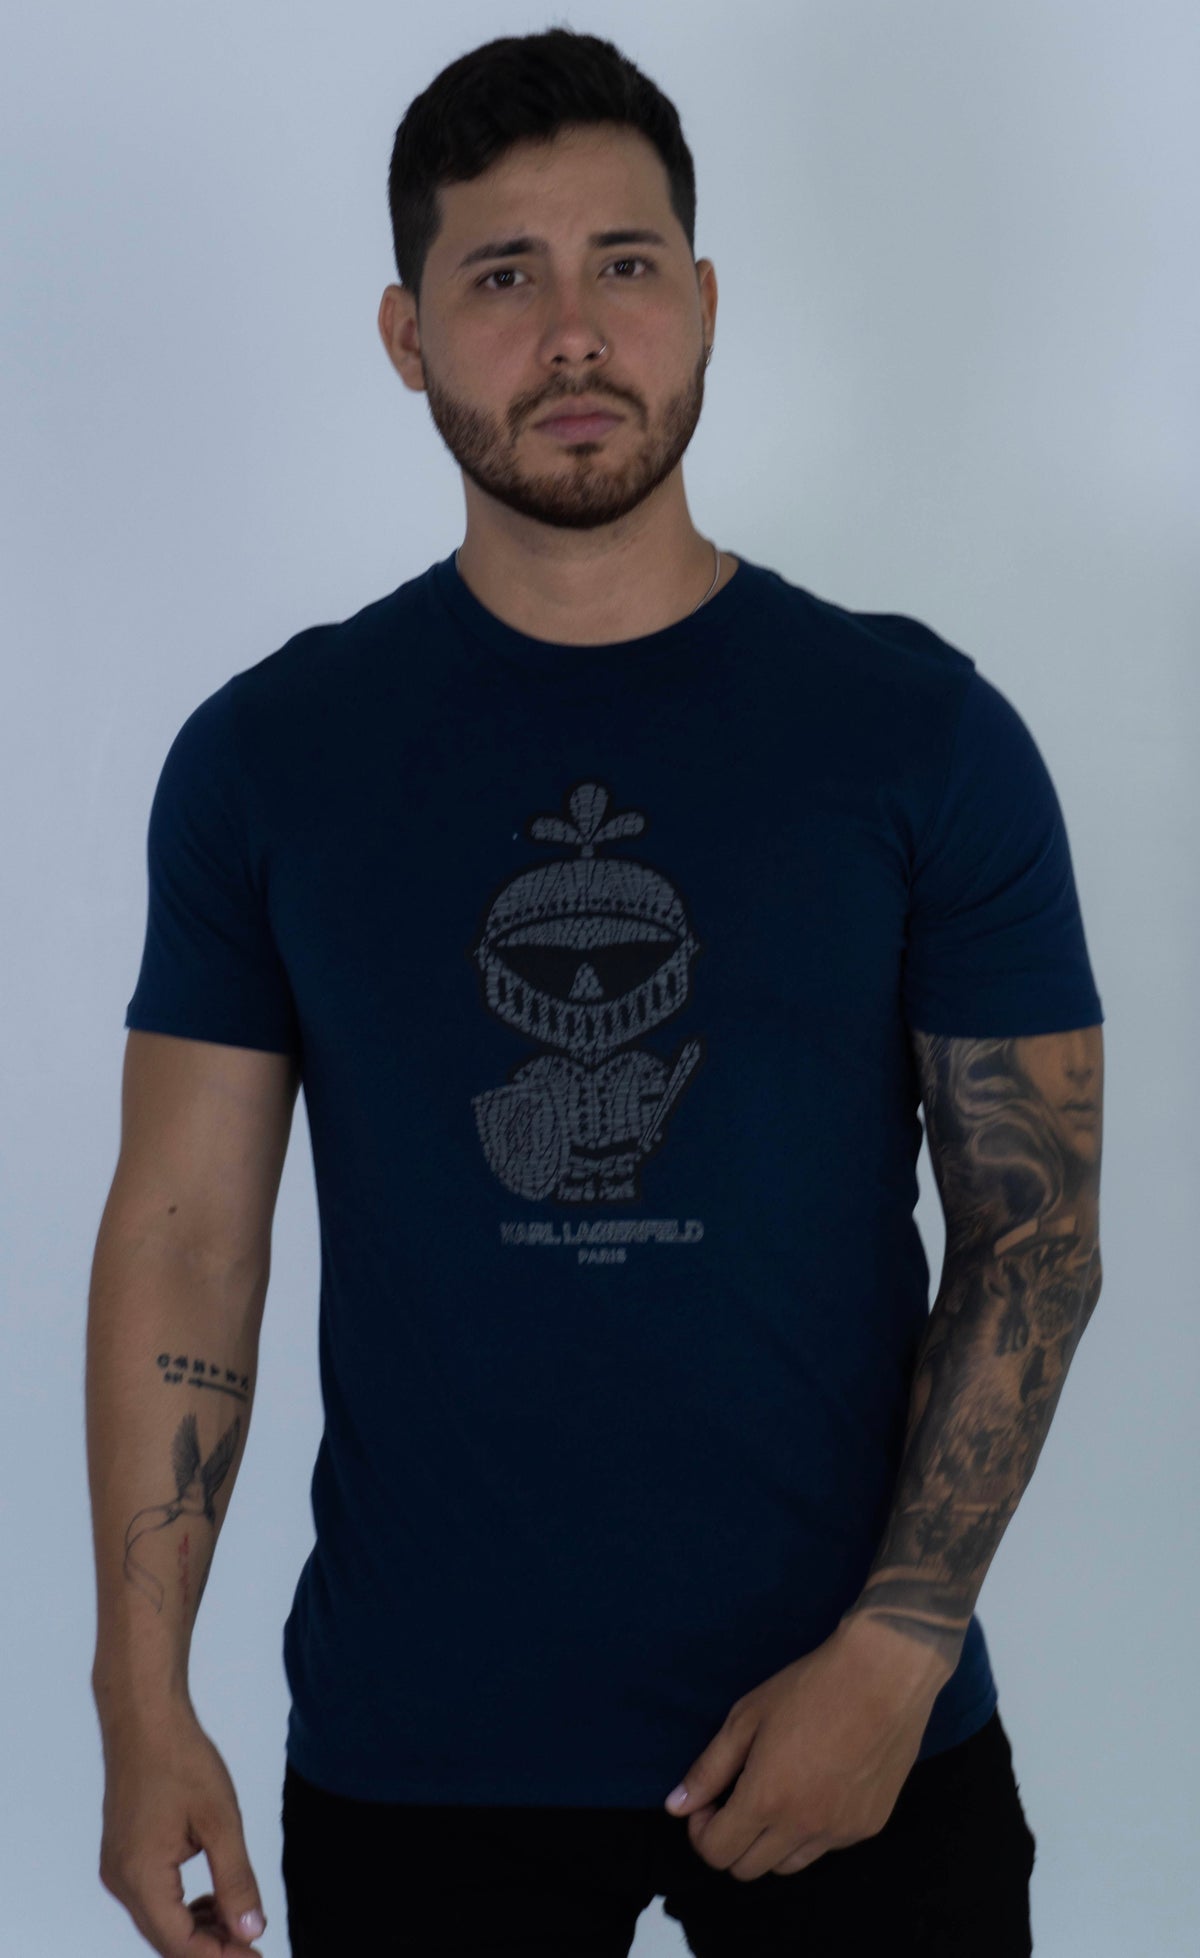 Camiseta Karl Lagerfeld Navy